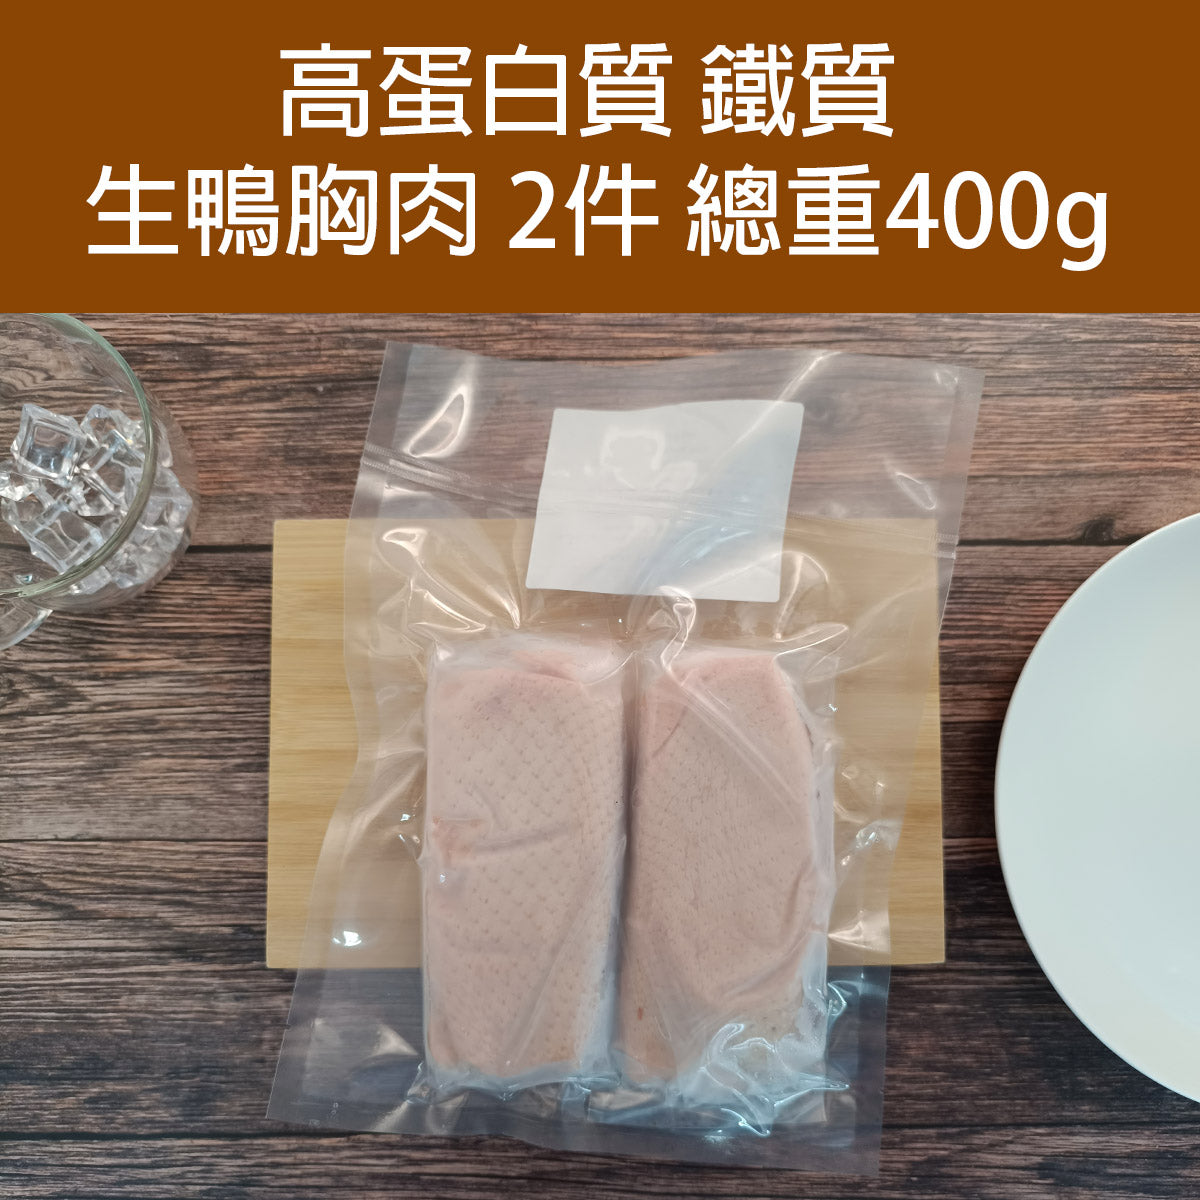 鴨胸肉 (生) (約200g x 2包) (約400g) (急凍-18°C)